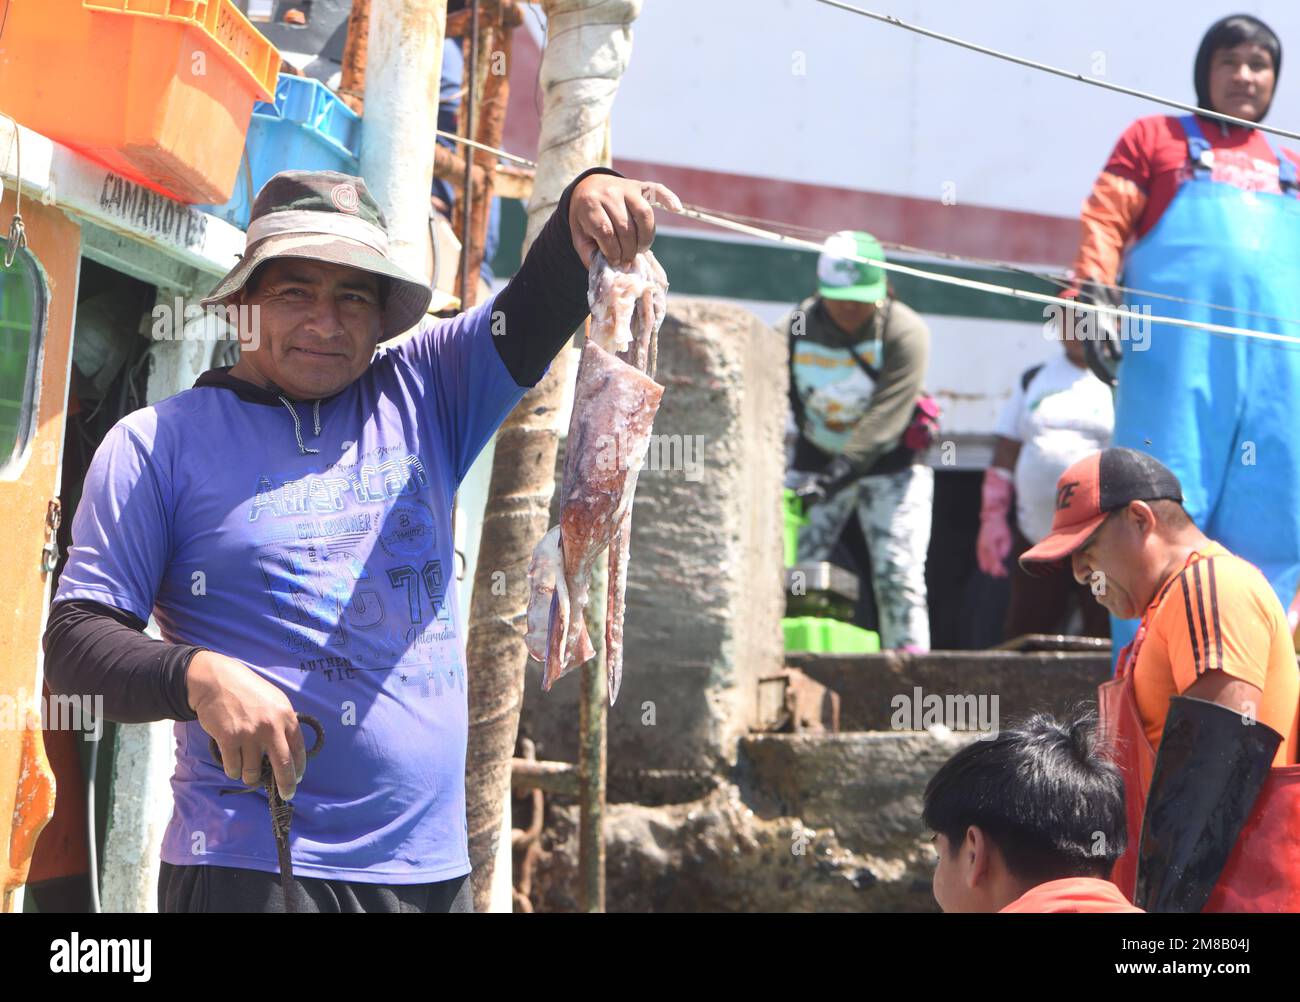 Fischer zeigen ihren Tintenfischfang auf ihrer Rückkehr von einer erfolgreichen Reise im nährstoffreichen Humboldt Current an der Pazifikküste Perus. Pisc Stockfoto